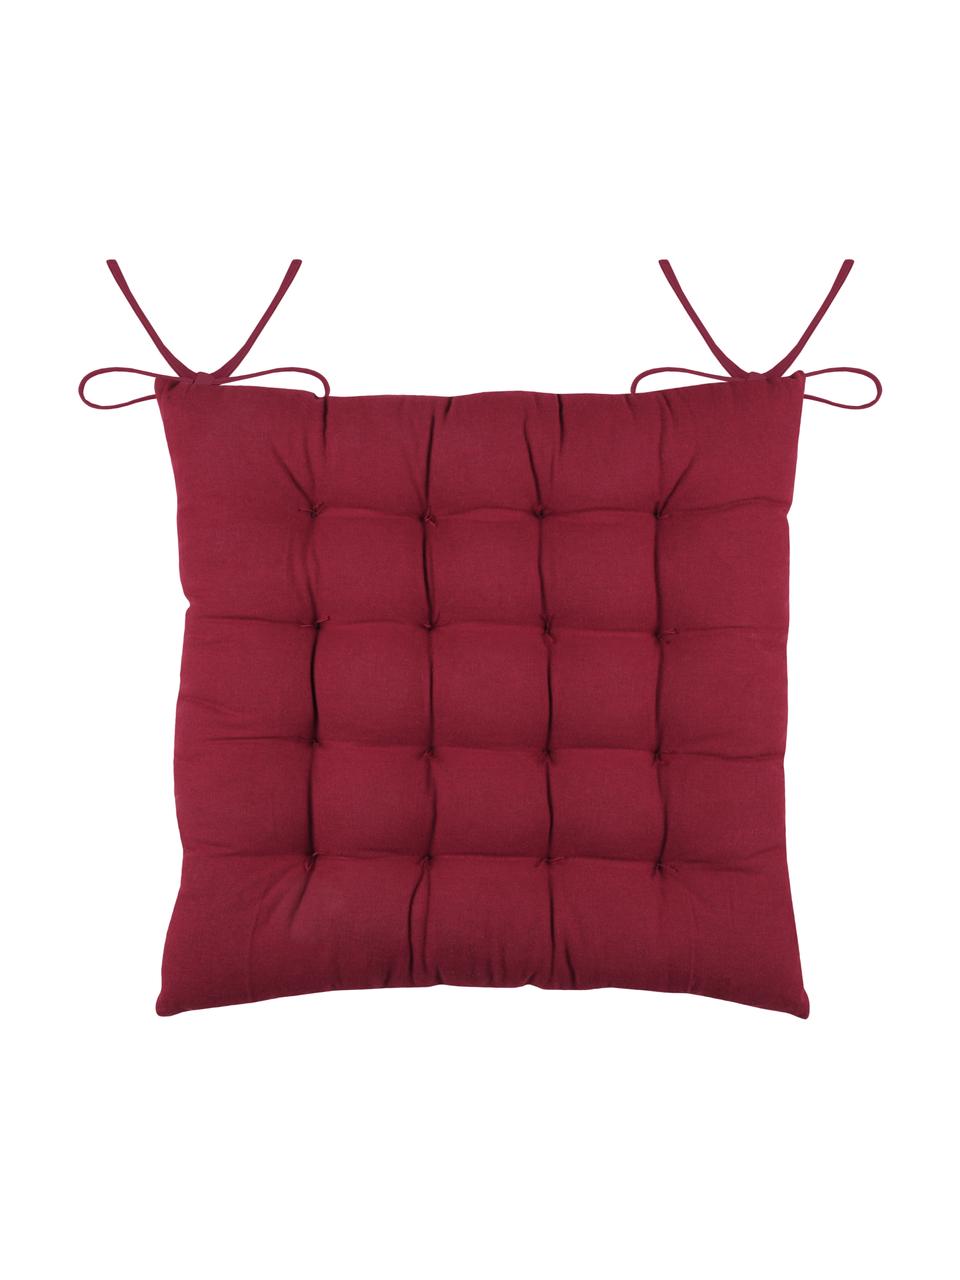 Cuscino sedia reversibile rosso/bianco Galette, 100% cotone, Rosso, bianco, Larg. 40 x Lung. 40 cm